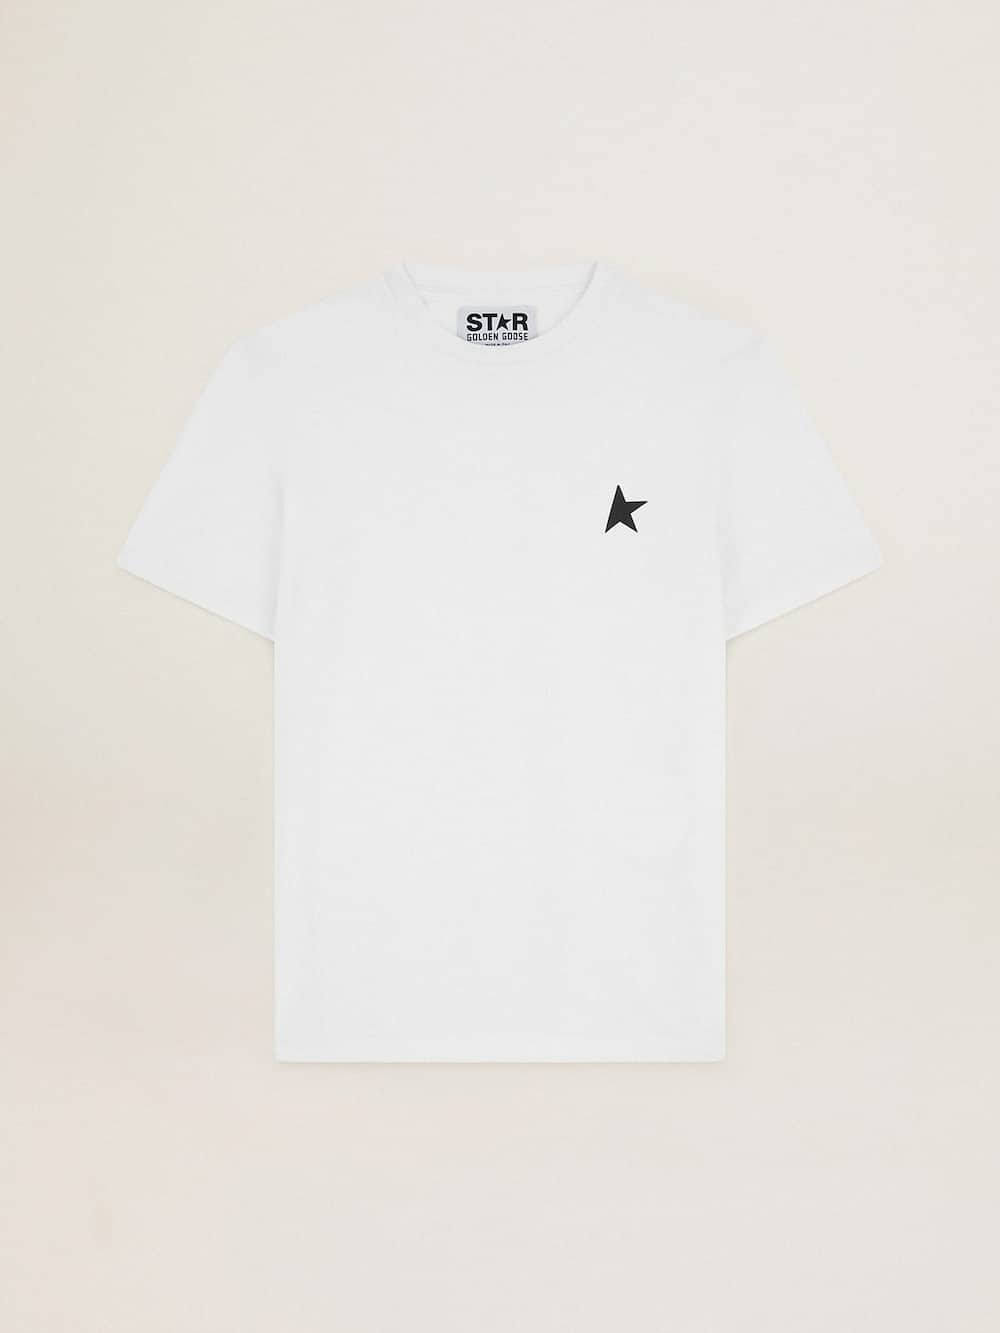 Golden Goose - Camiseta branca Coleção Star com estrela preta na frente in 